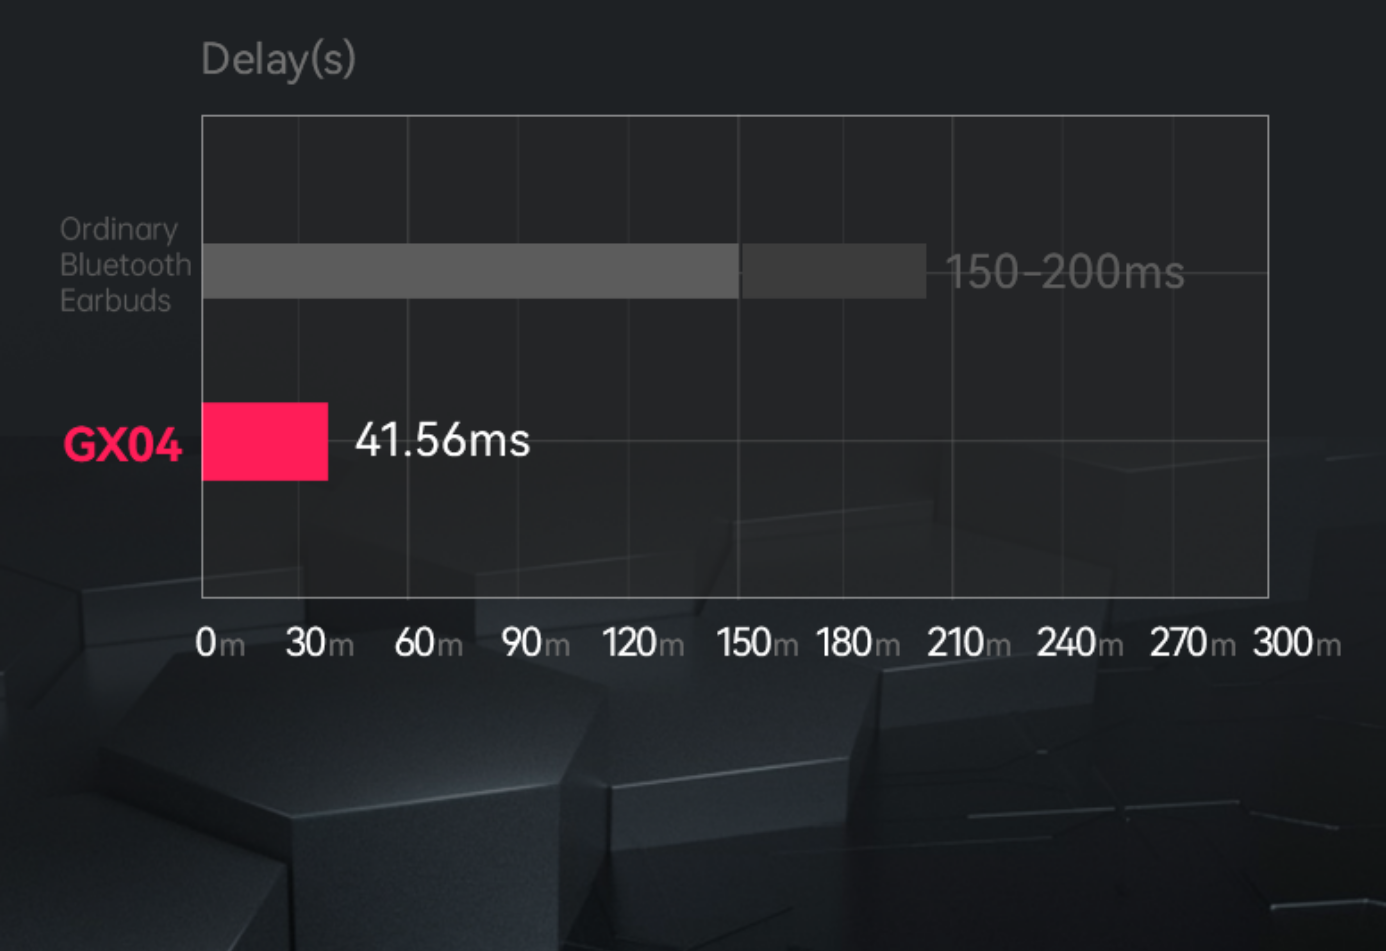 EDIFIER GX04 gaming headphone speed measured 41.56ms